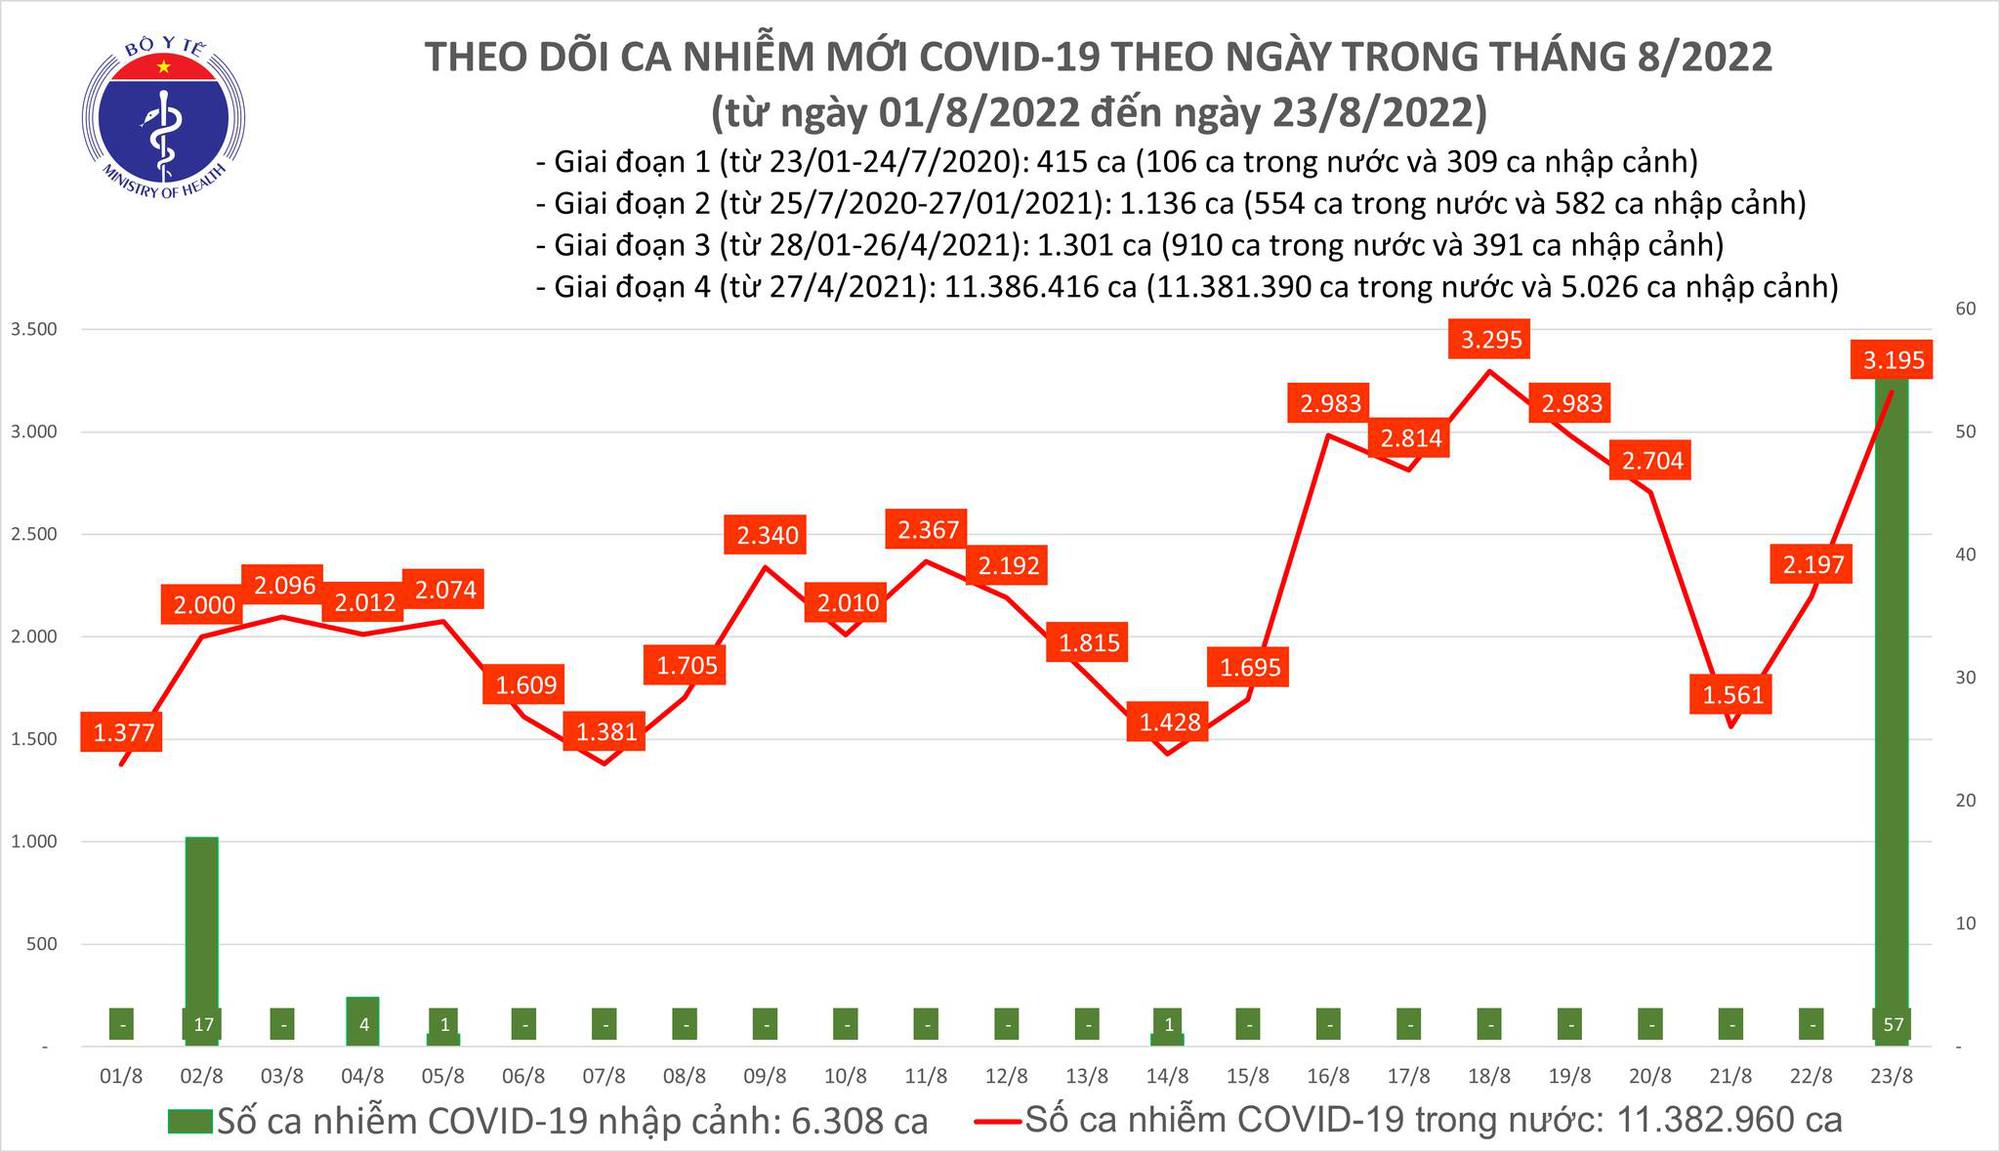 Ngày 23/8: Ca COVID-19 tăng vọt lên 3.195; cao nhất trong 5 ngày qua - Ảnh 1.